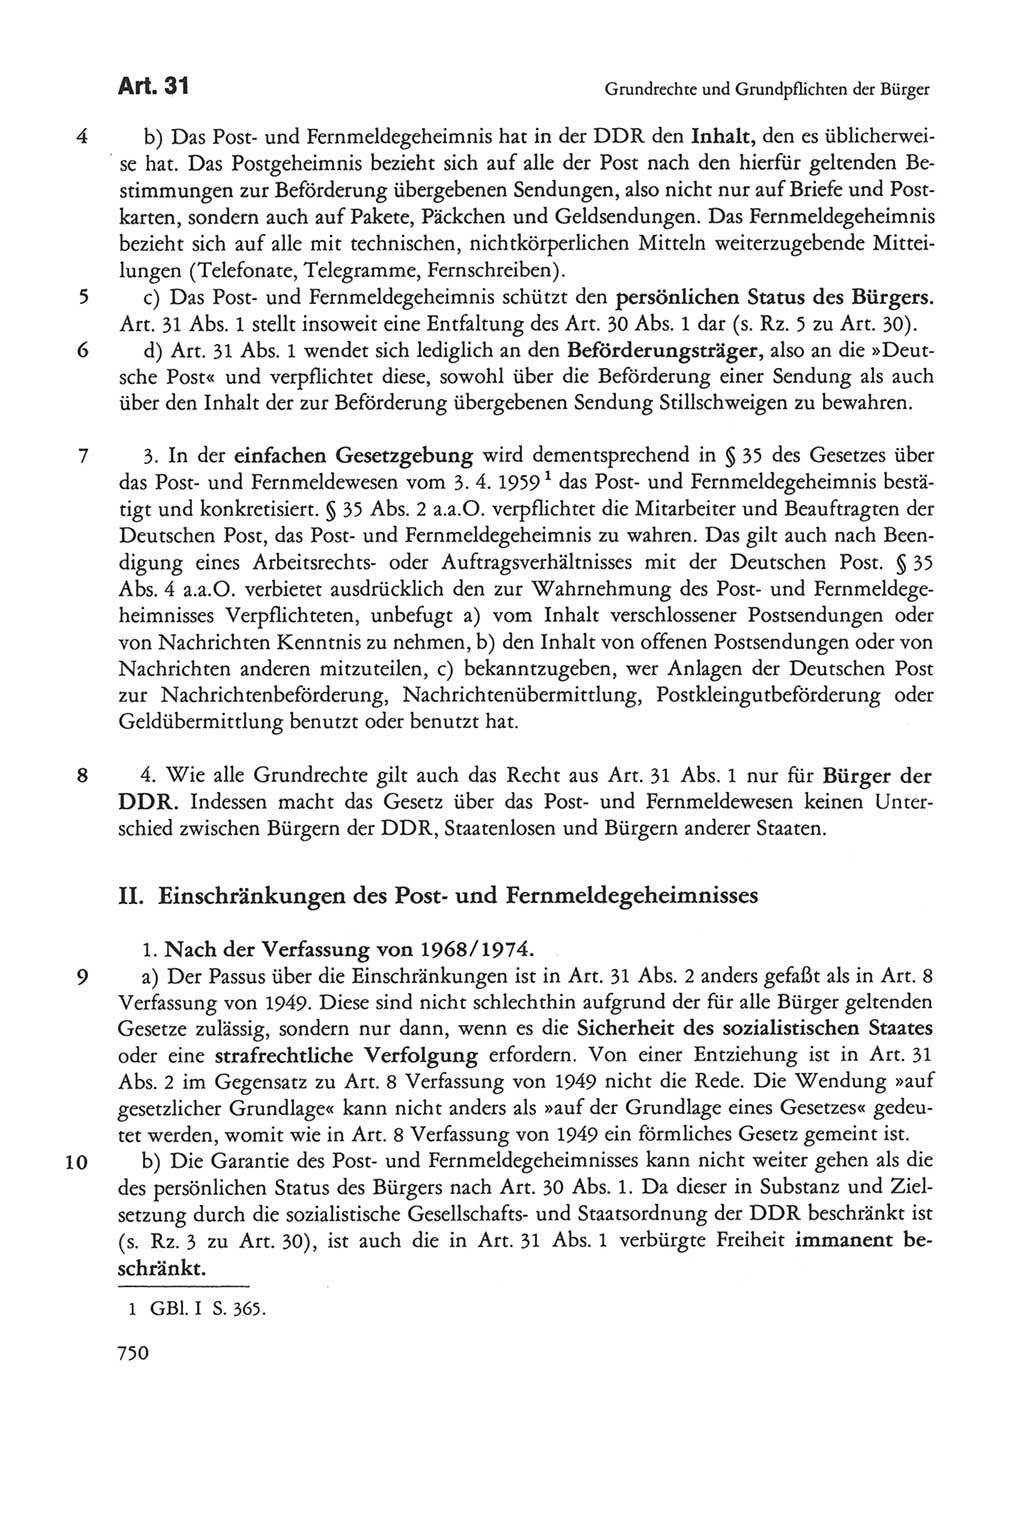 Die sozialistische Verfassung der Deutschen Demokratischen Republik (DDR), Kommentar 1982, Seite 750 (Soz. Verf. DDR Komm. 1982, S. 750)